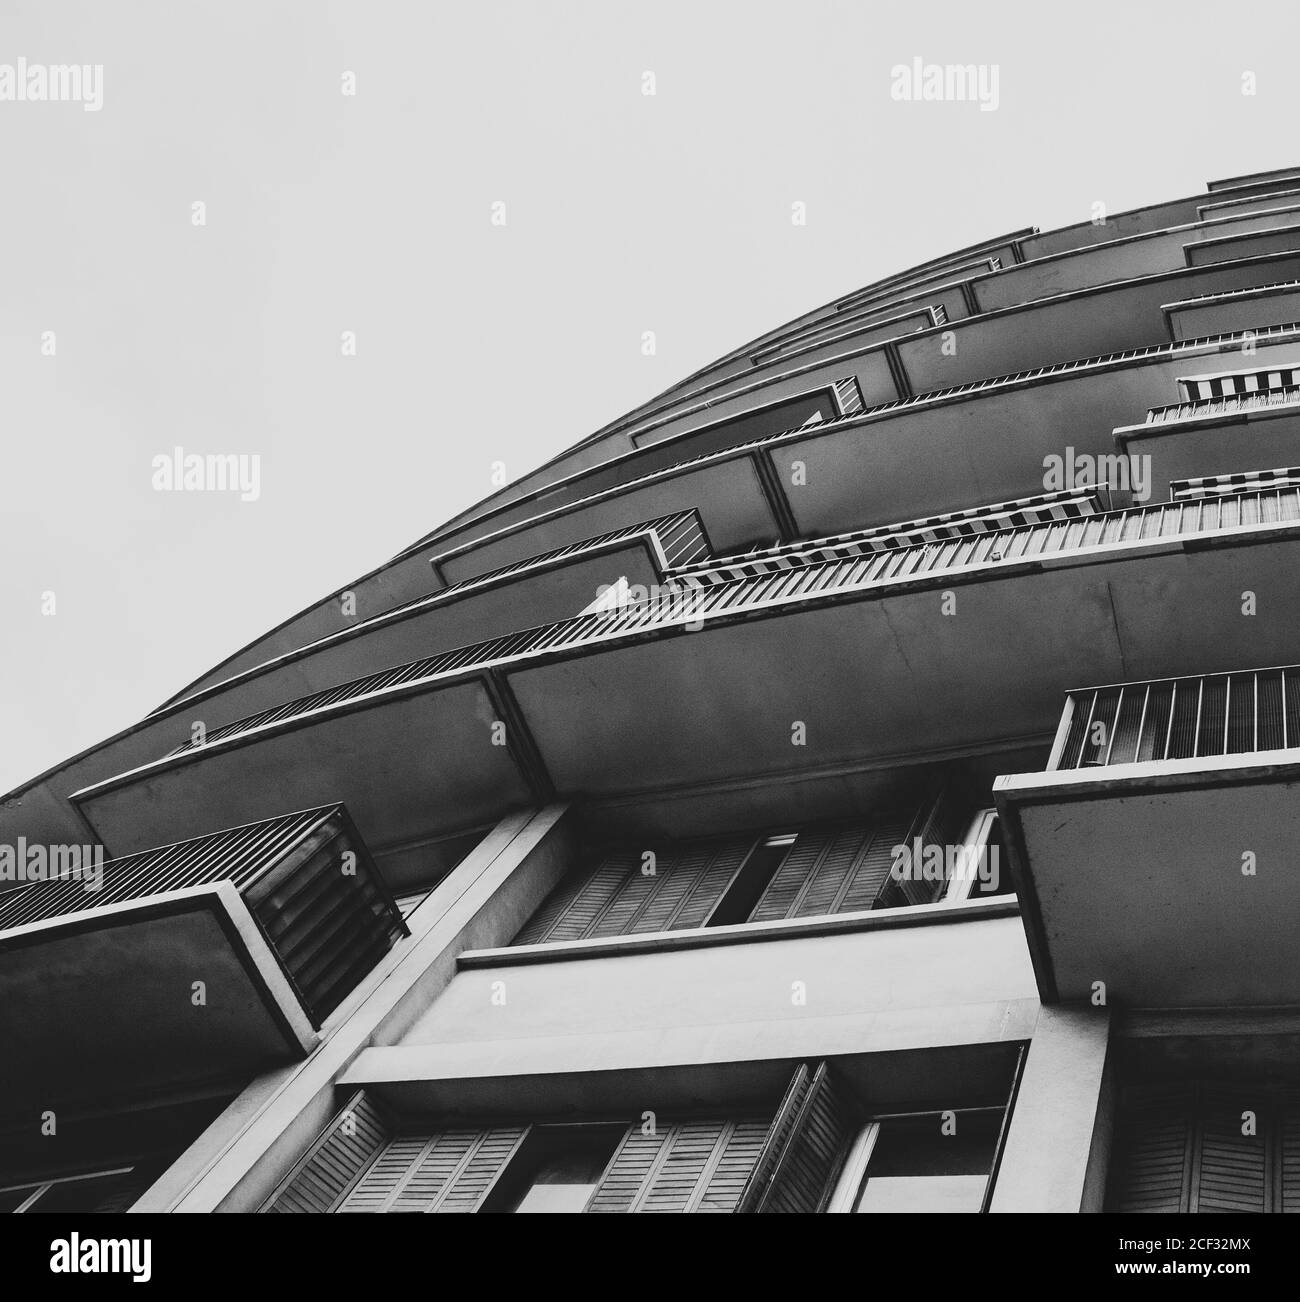 Dettaglio architettonico. Angolo di vista con disegno a labirinto grafico dell'edificio con balconi e ombrellone a strisce. Foto in bianco e nero. Foto Stock